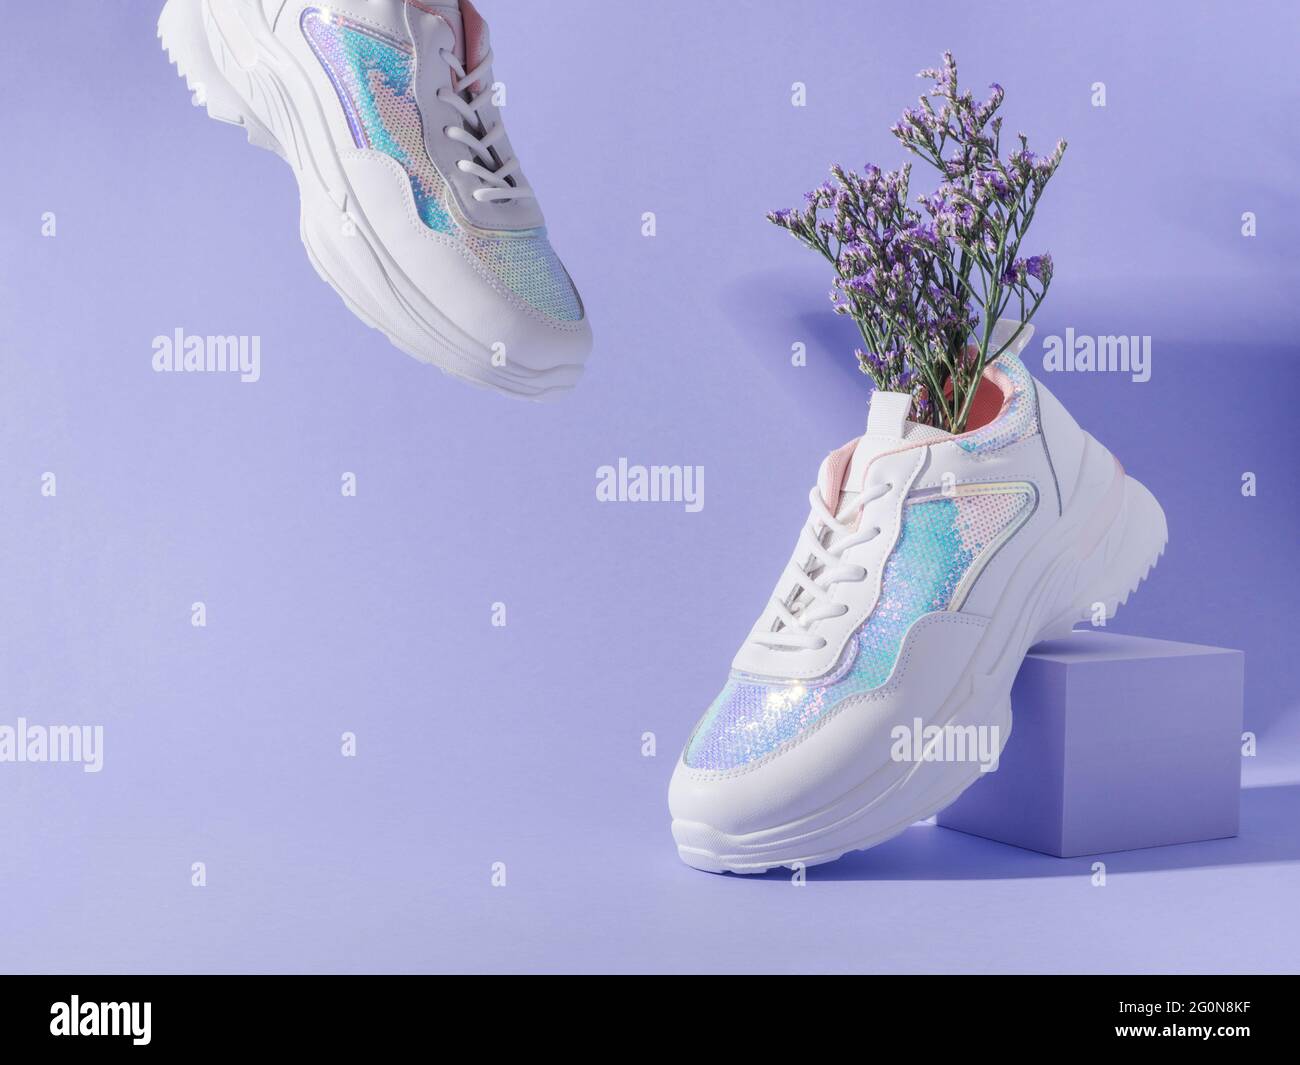 Weiße Sneakers mit Pailletten und Blumen auf violettem Hintergrund mit  geometrischem Würfelpodium Stockfotografie - Alamy